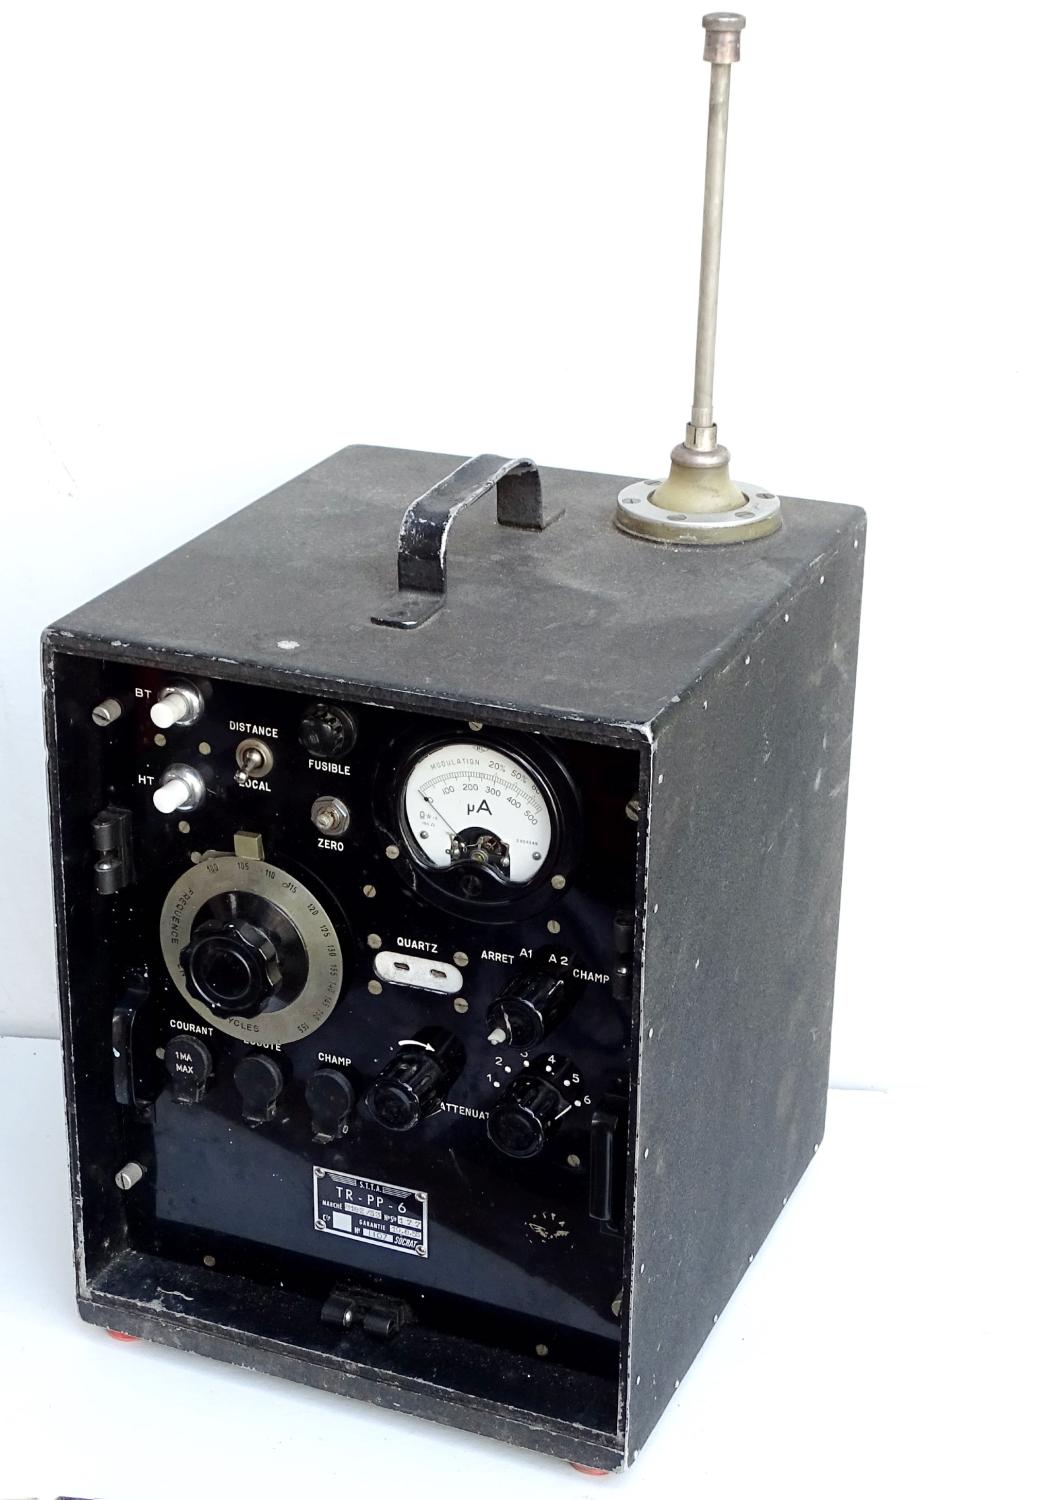 Testeur VHF  TR-PP-6 Socrat. Arm&eacute;e de l&#039;Air 1953